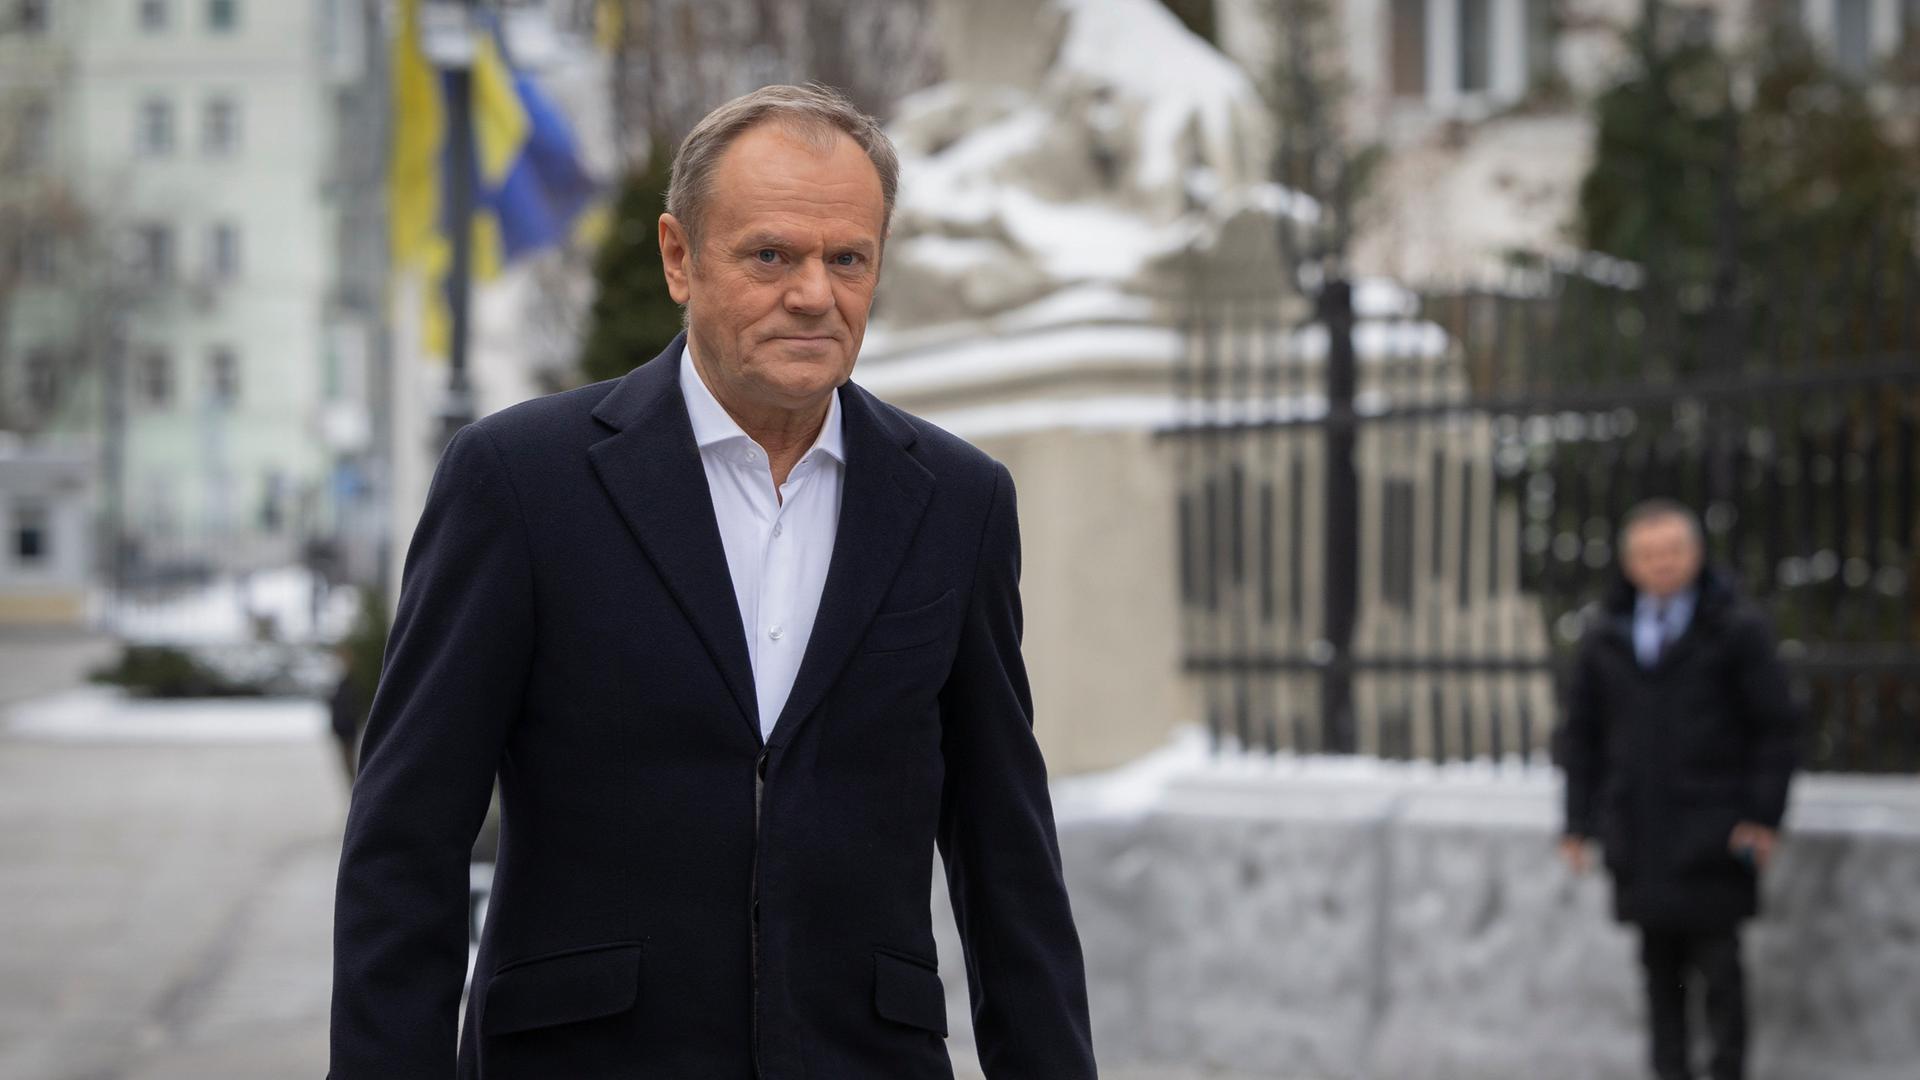 Der polnische Ministerpräsident Tusk auf einer Straße in Kiew